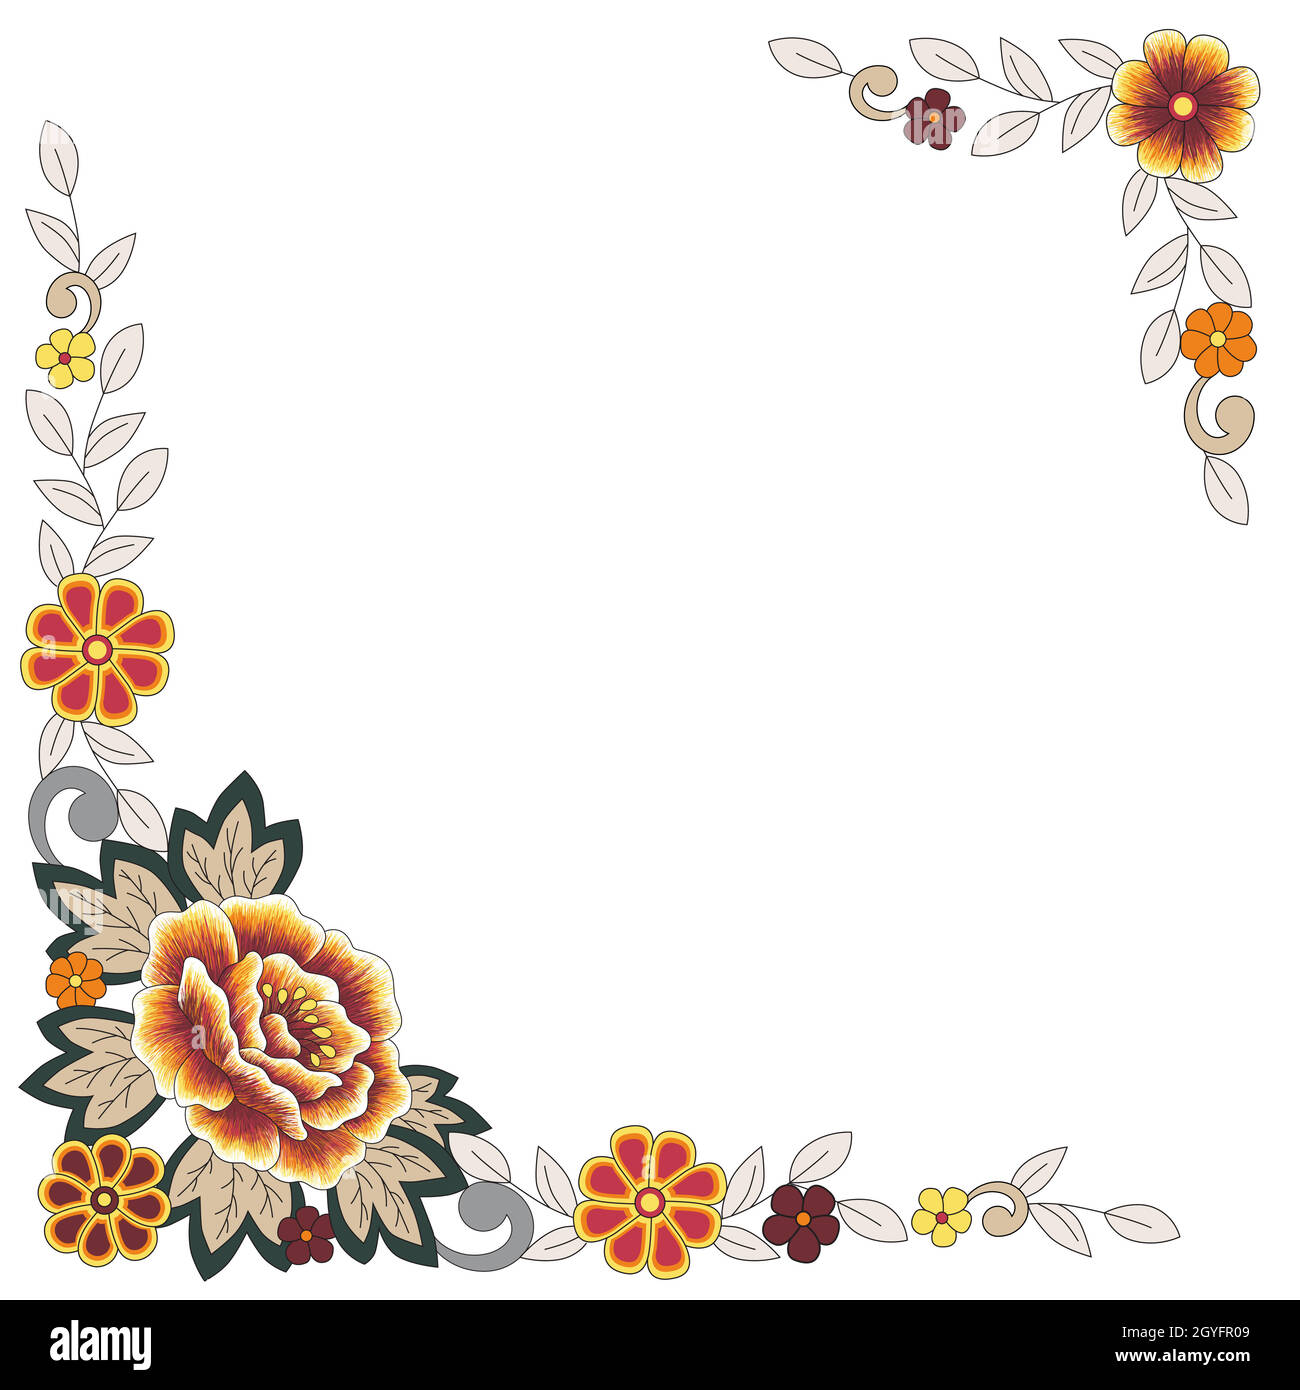 Plantilla de vector cuadrado para tarjeta de felicitación, invitación o postal con elementos florales ornamentales de colores en las esquinas. Flores estilo folk y dejar Ilustración del Vector